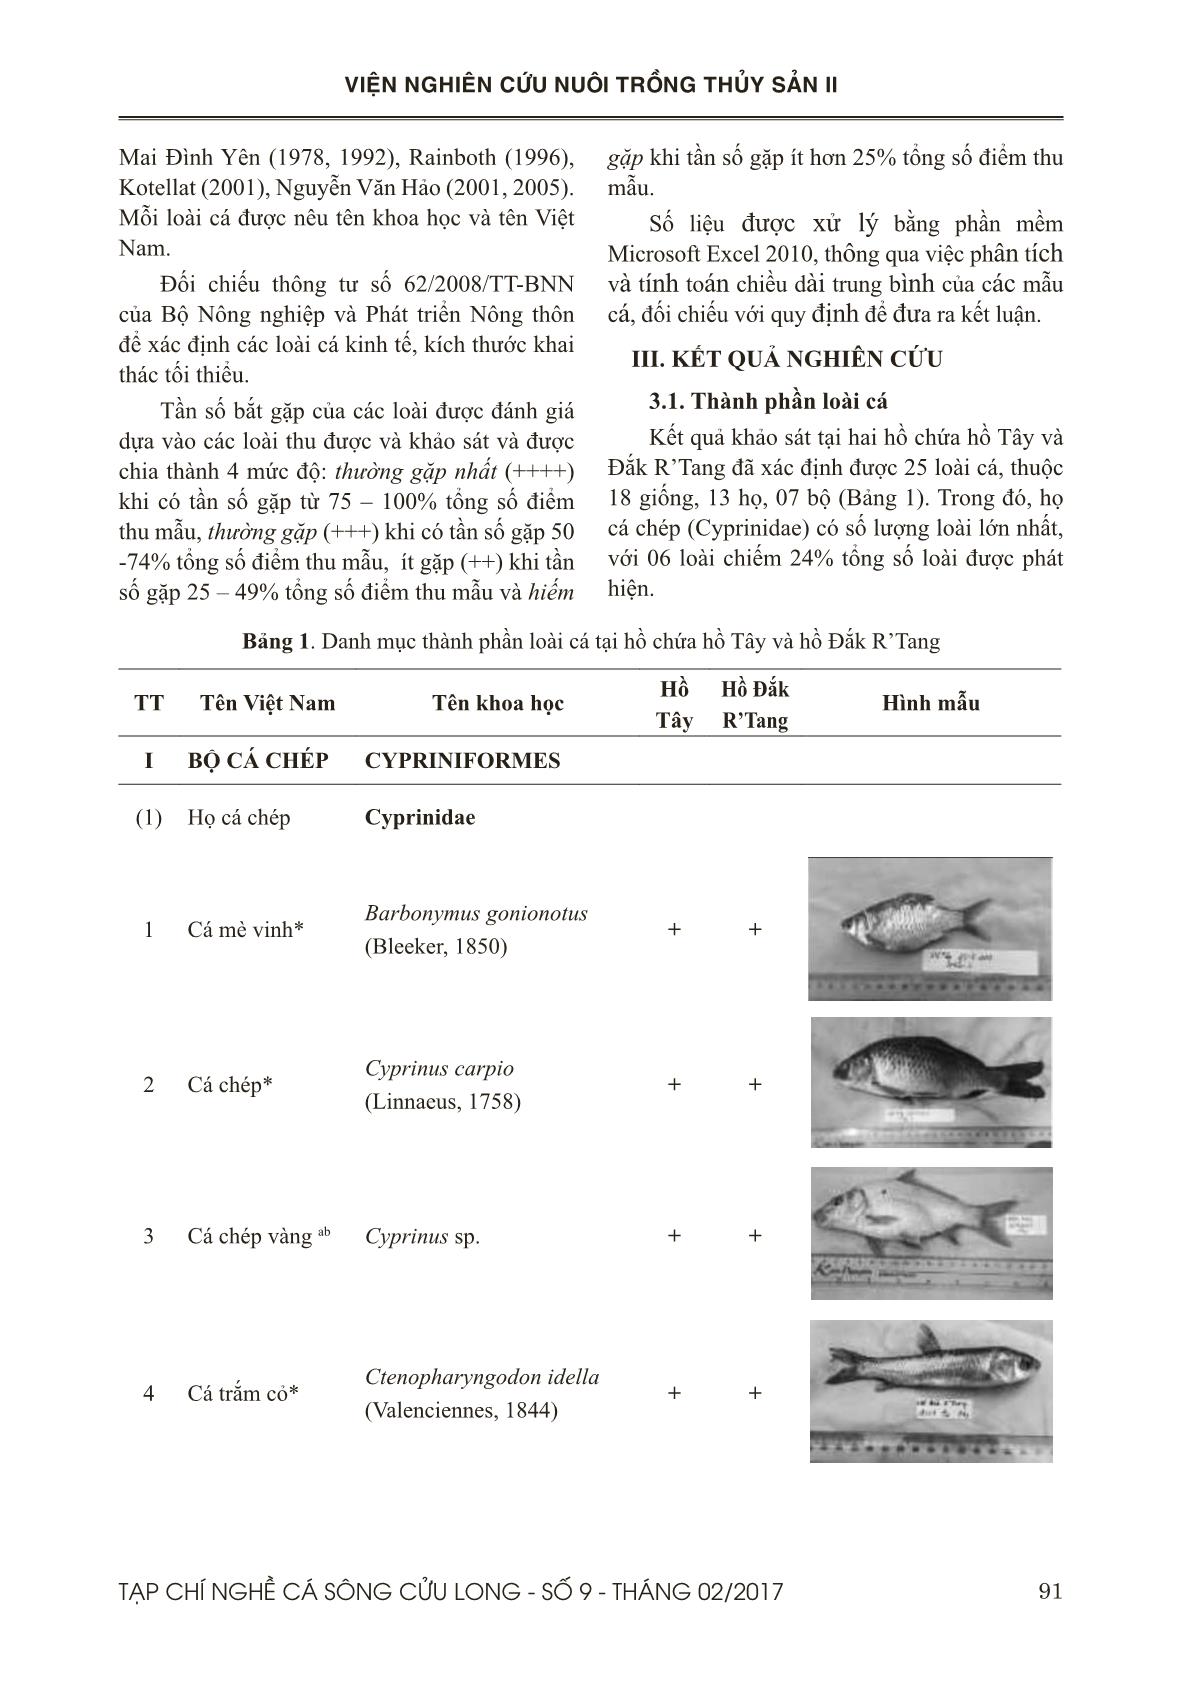 Nghiên cứu thành phần loài cá ở 2 hồ chứa: Hồ Tây và hồ Đắk R’tang thuộc tỉnh Đắk Nông trang 3